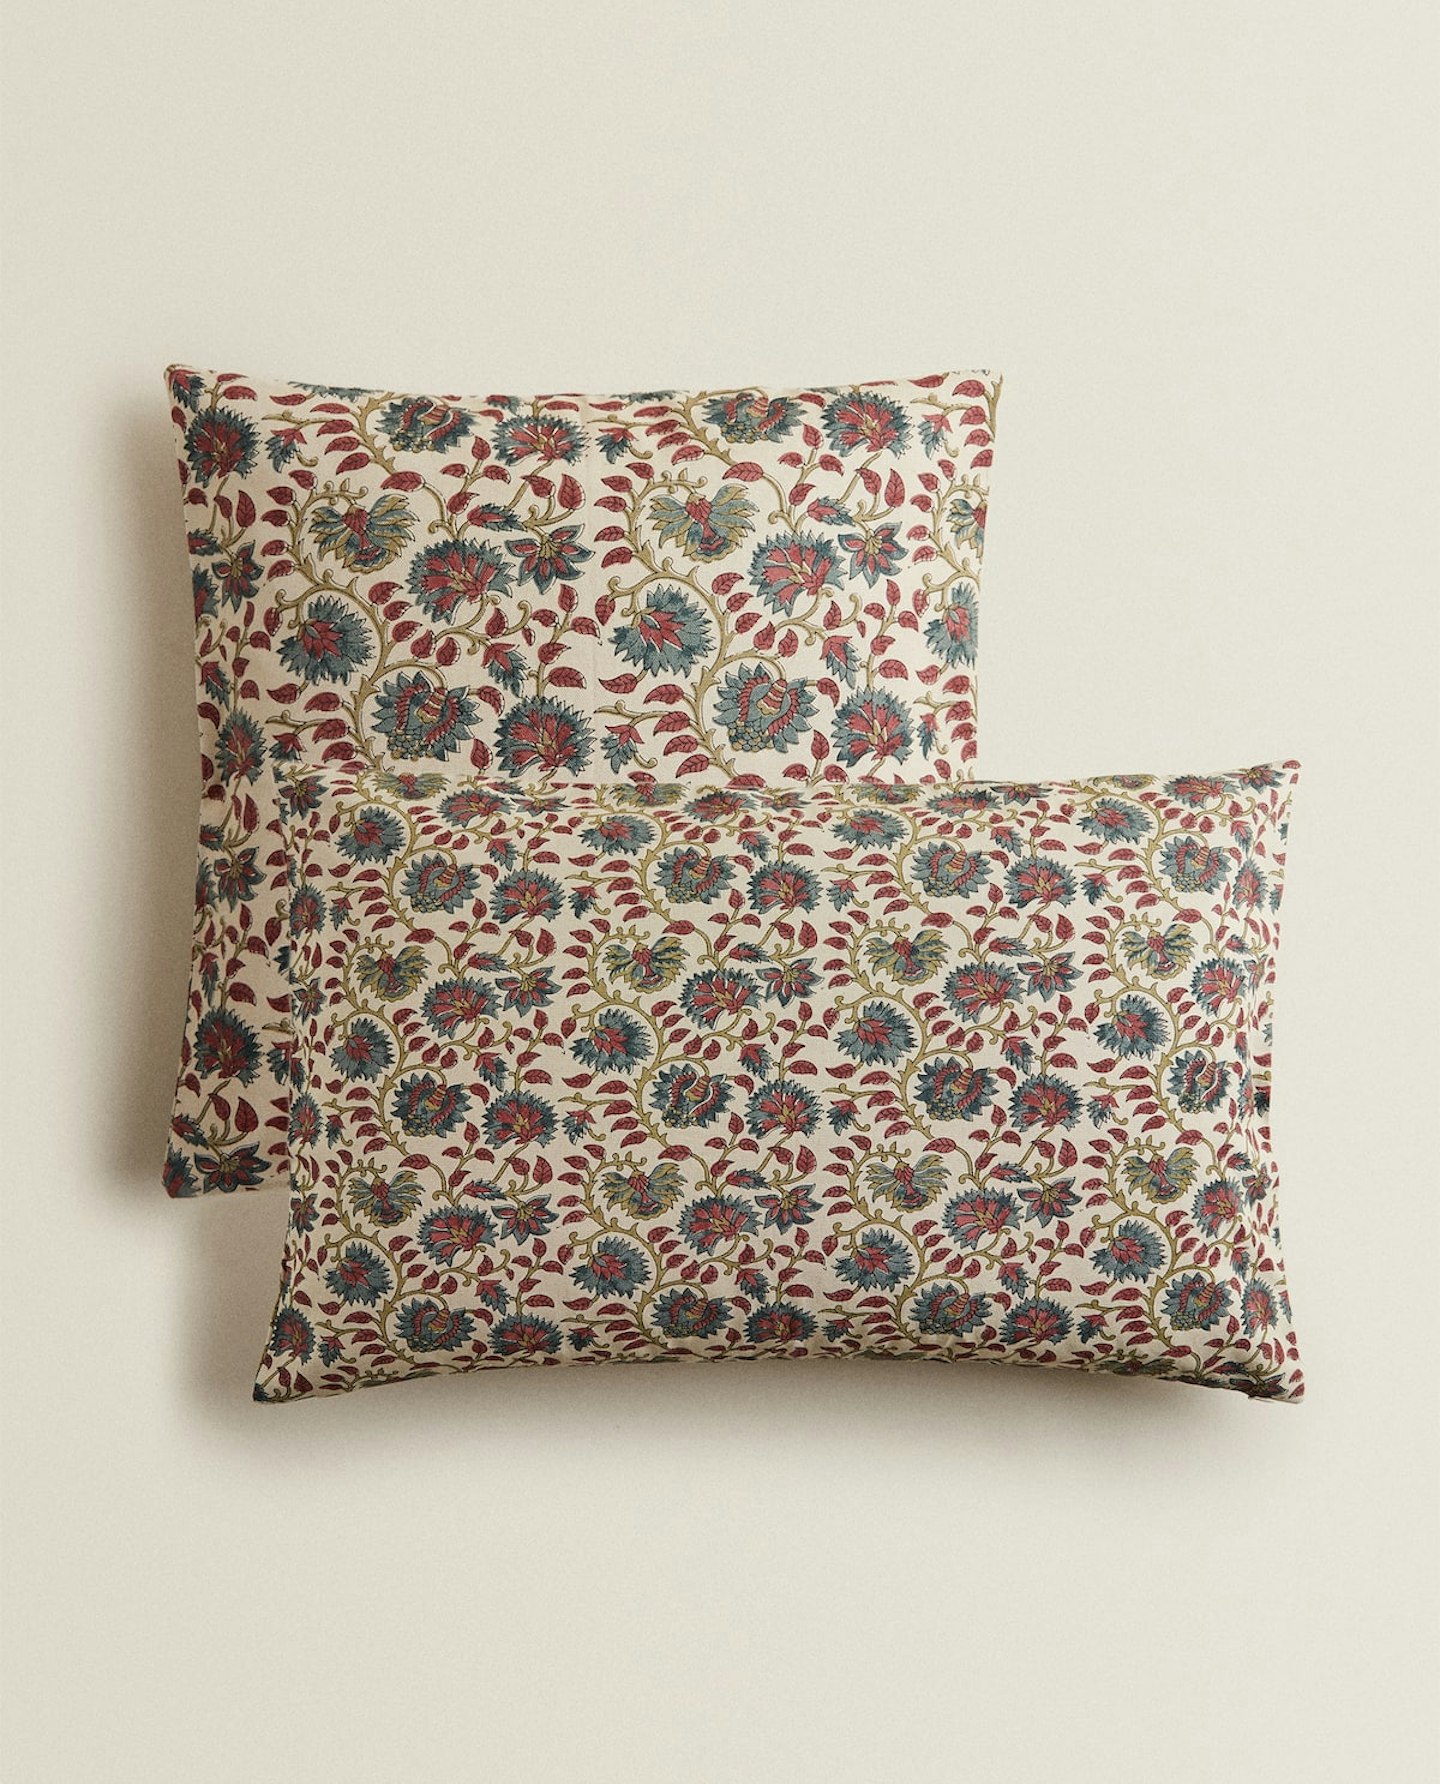 Zara Home, Floral Print Cushion Cover, £17.99